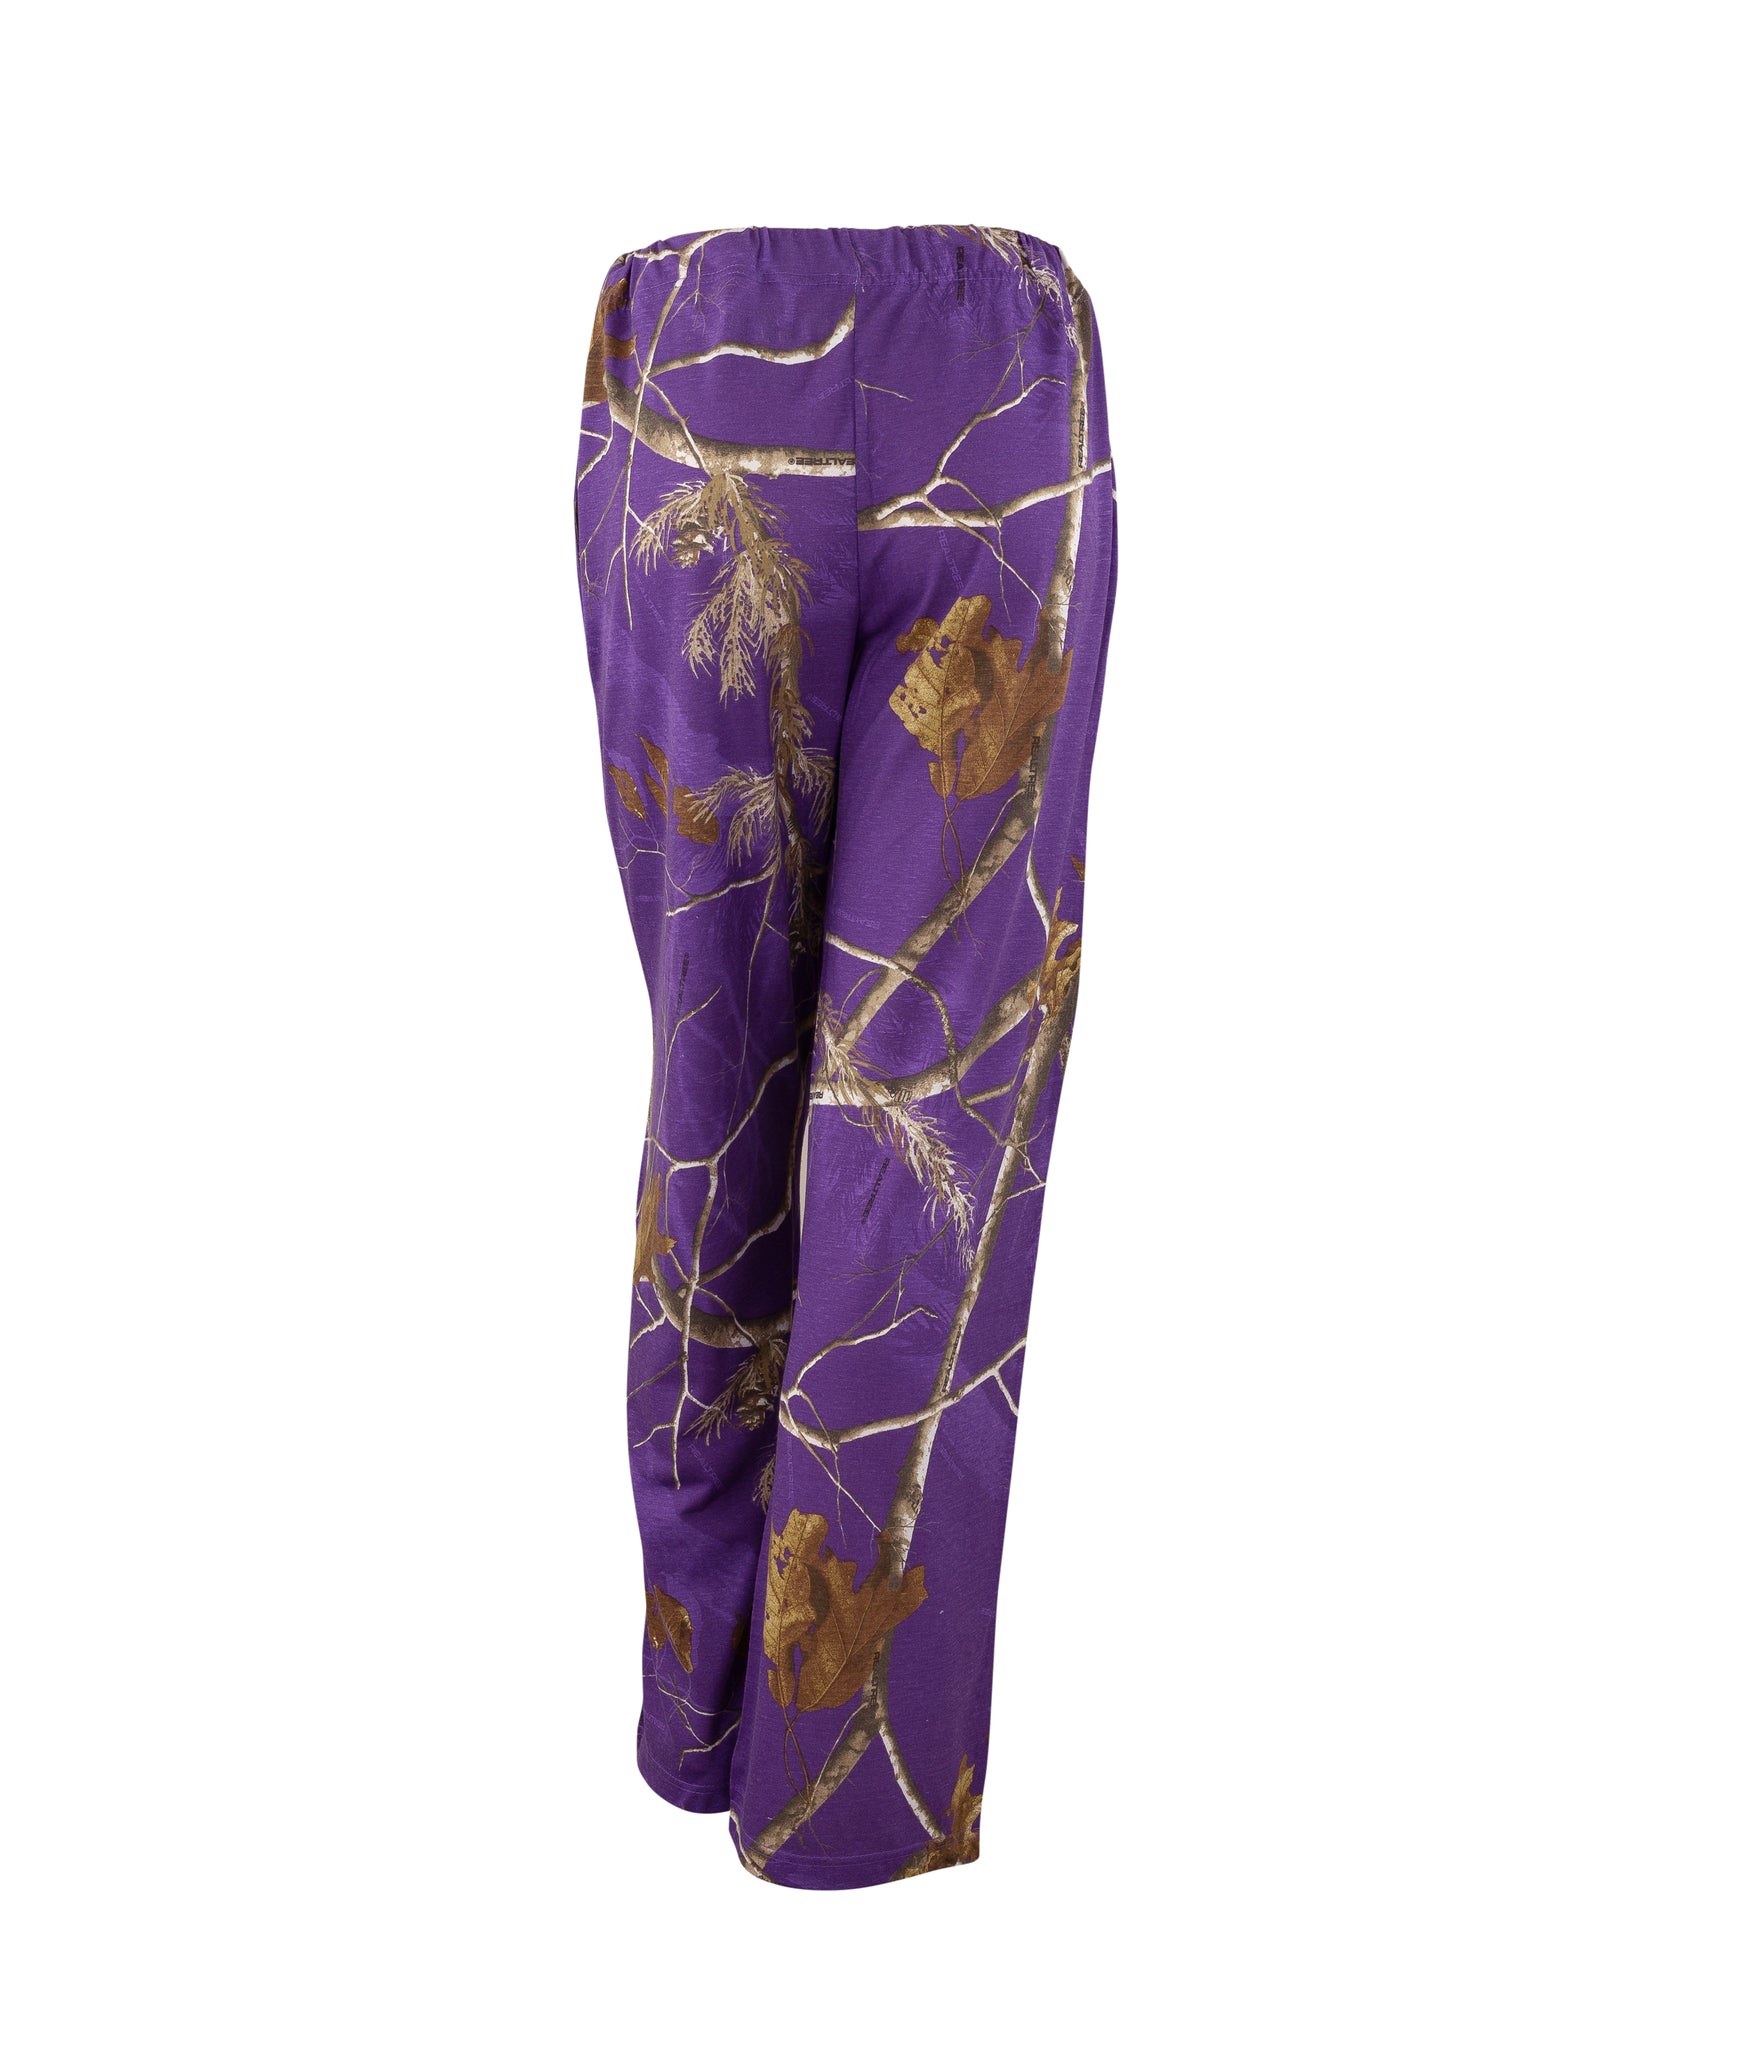 Ladies Lounge Pants in Realtree AP Purple Camo Print – Mooselander